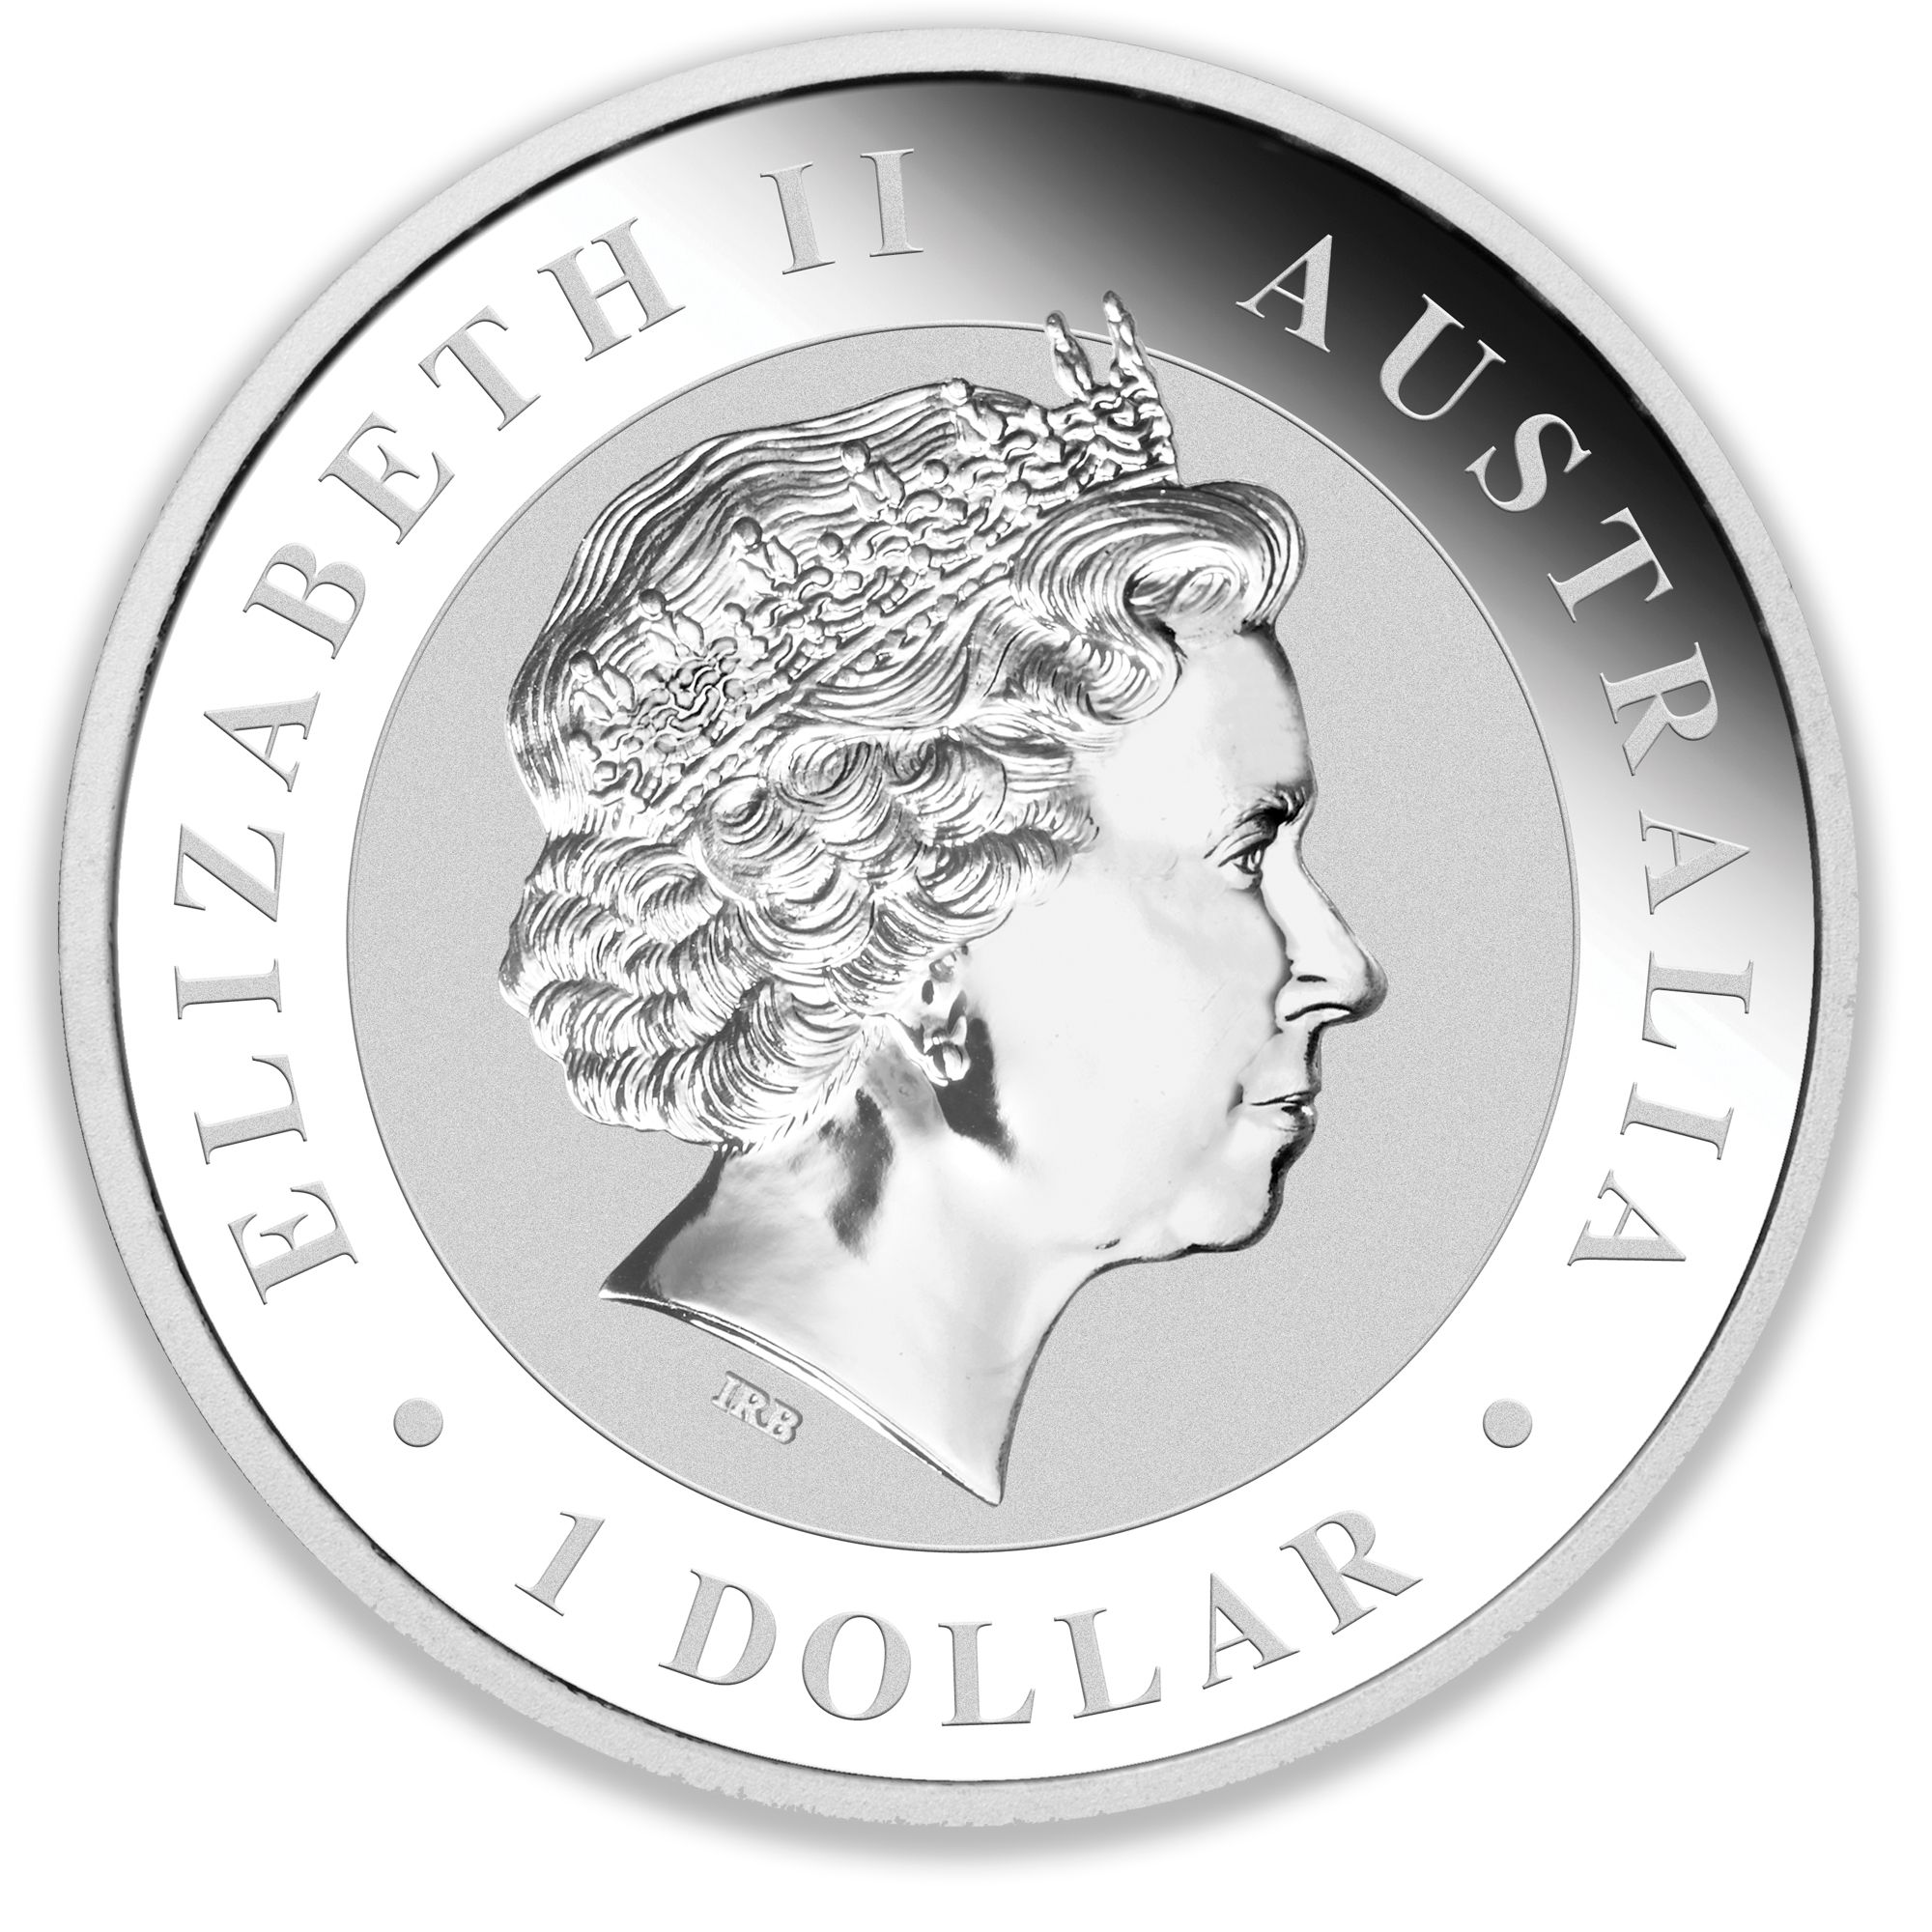 2013 1oz Perth Mint Silver Koala Coin